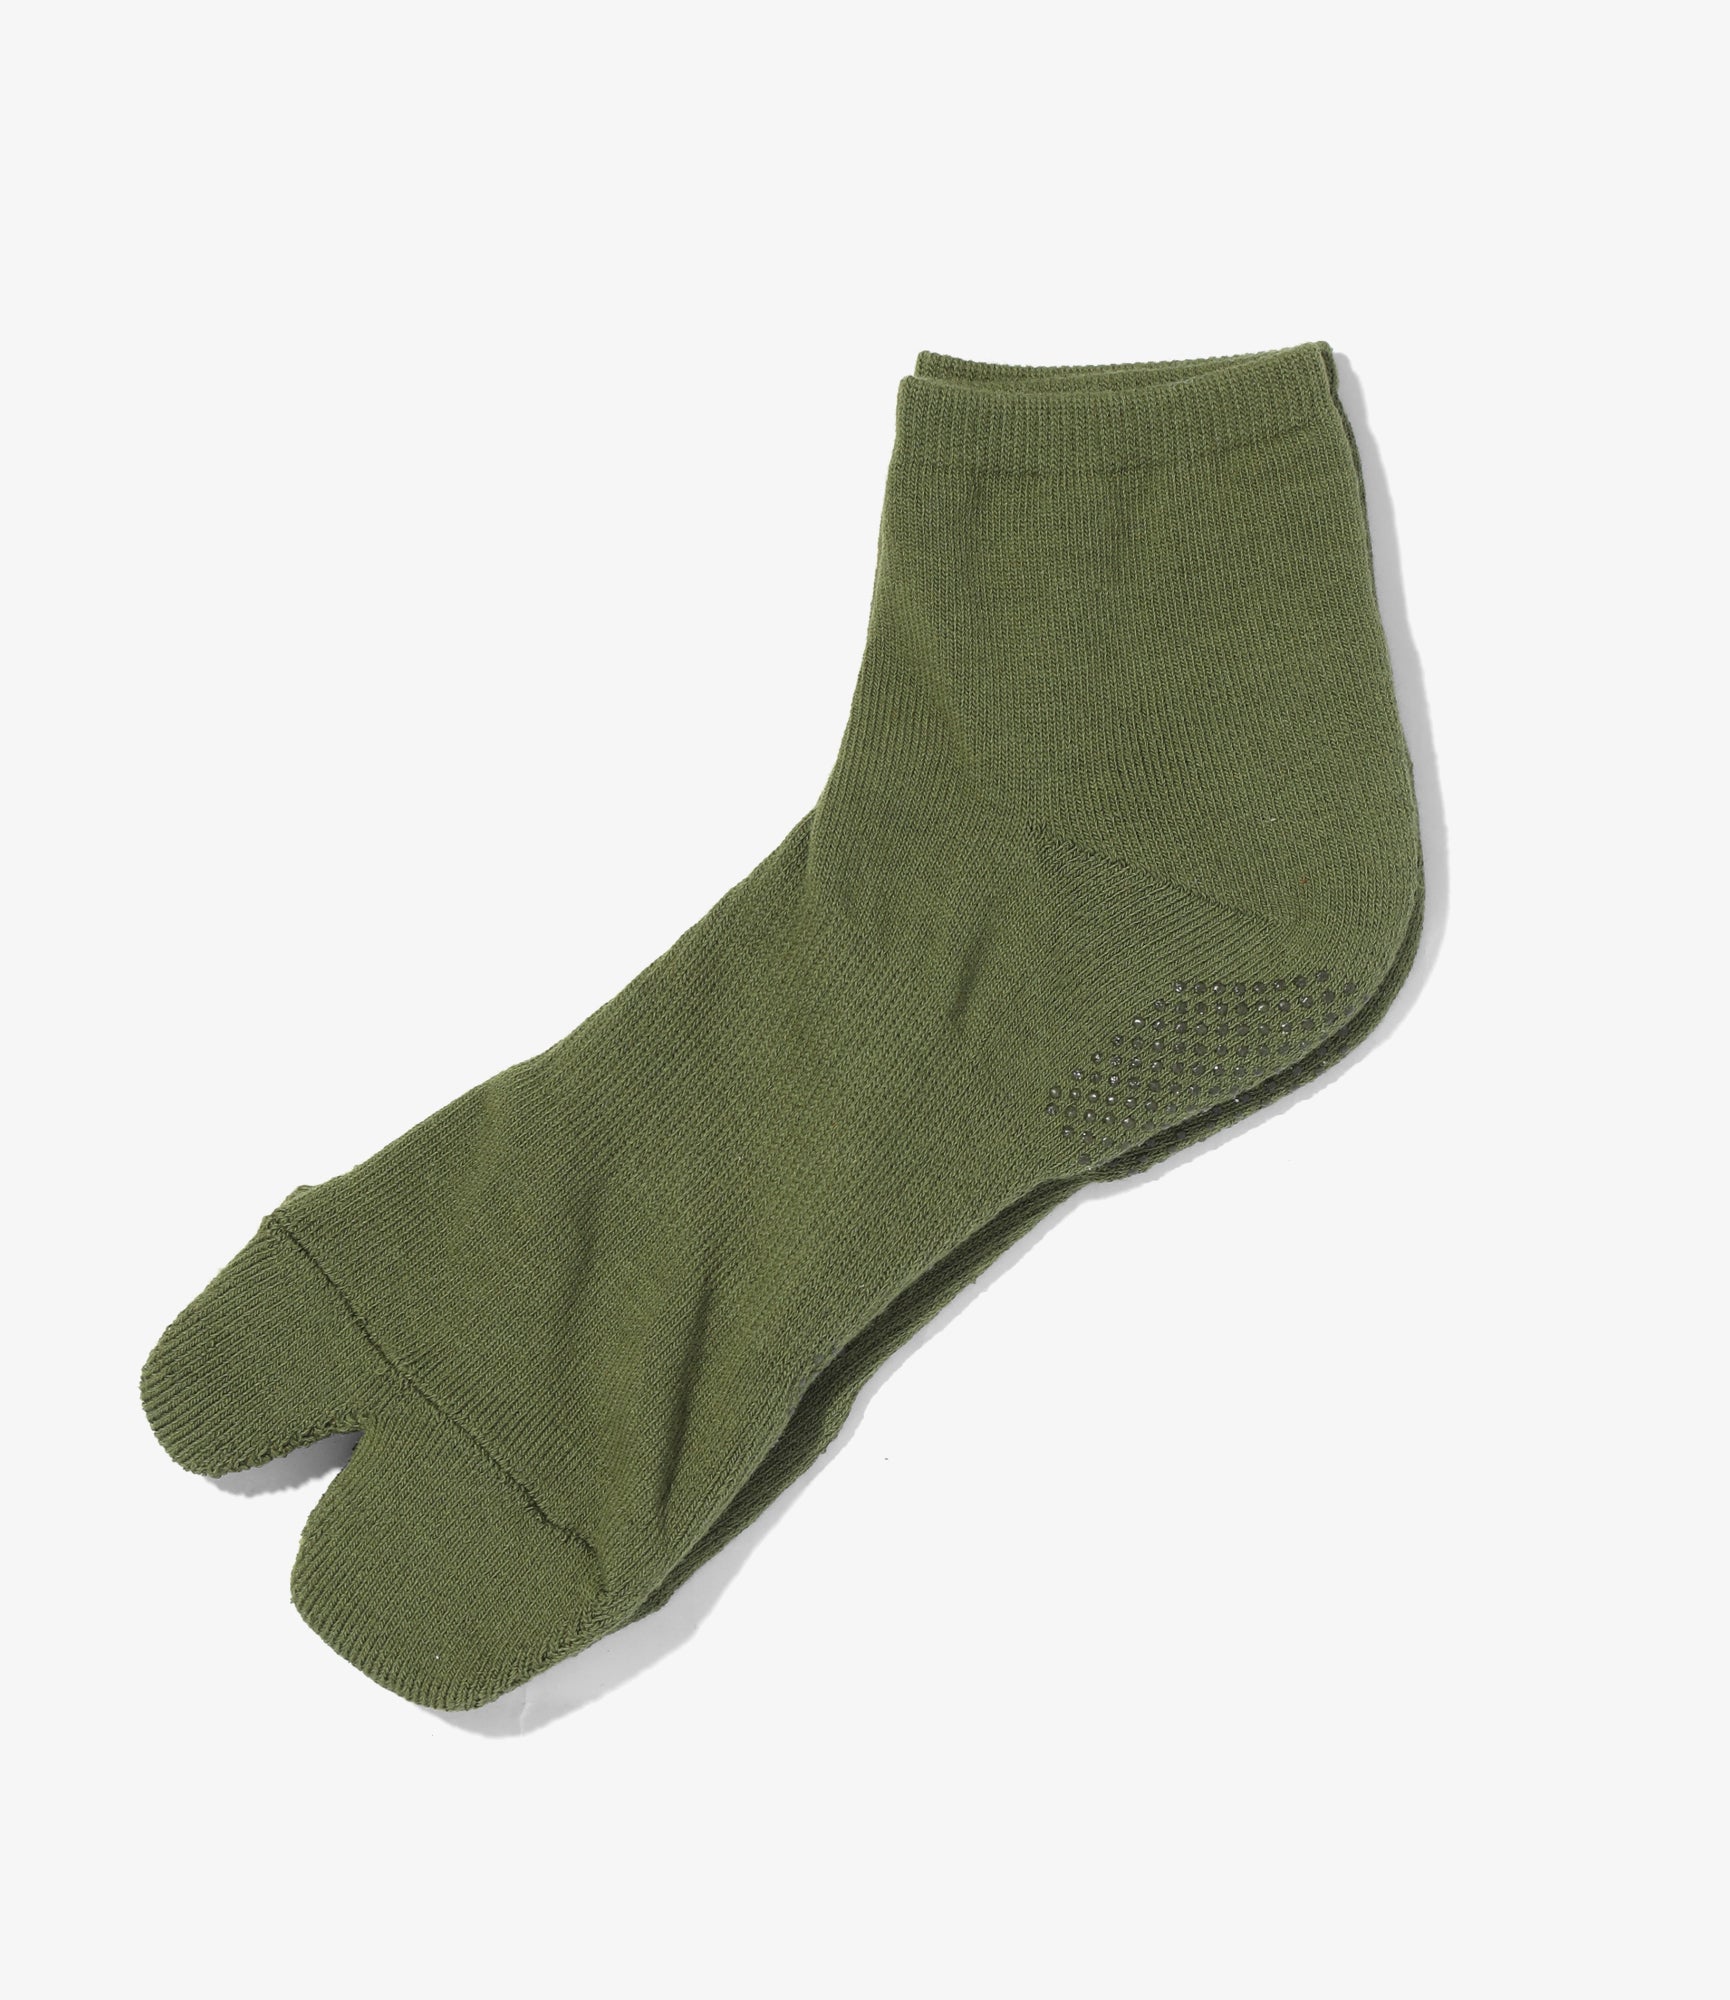 Thumb Ankle Socks - Dk. Green - Cool Max